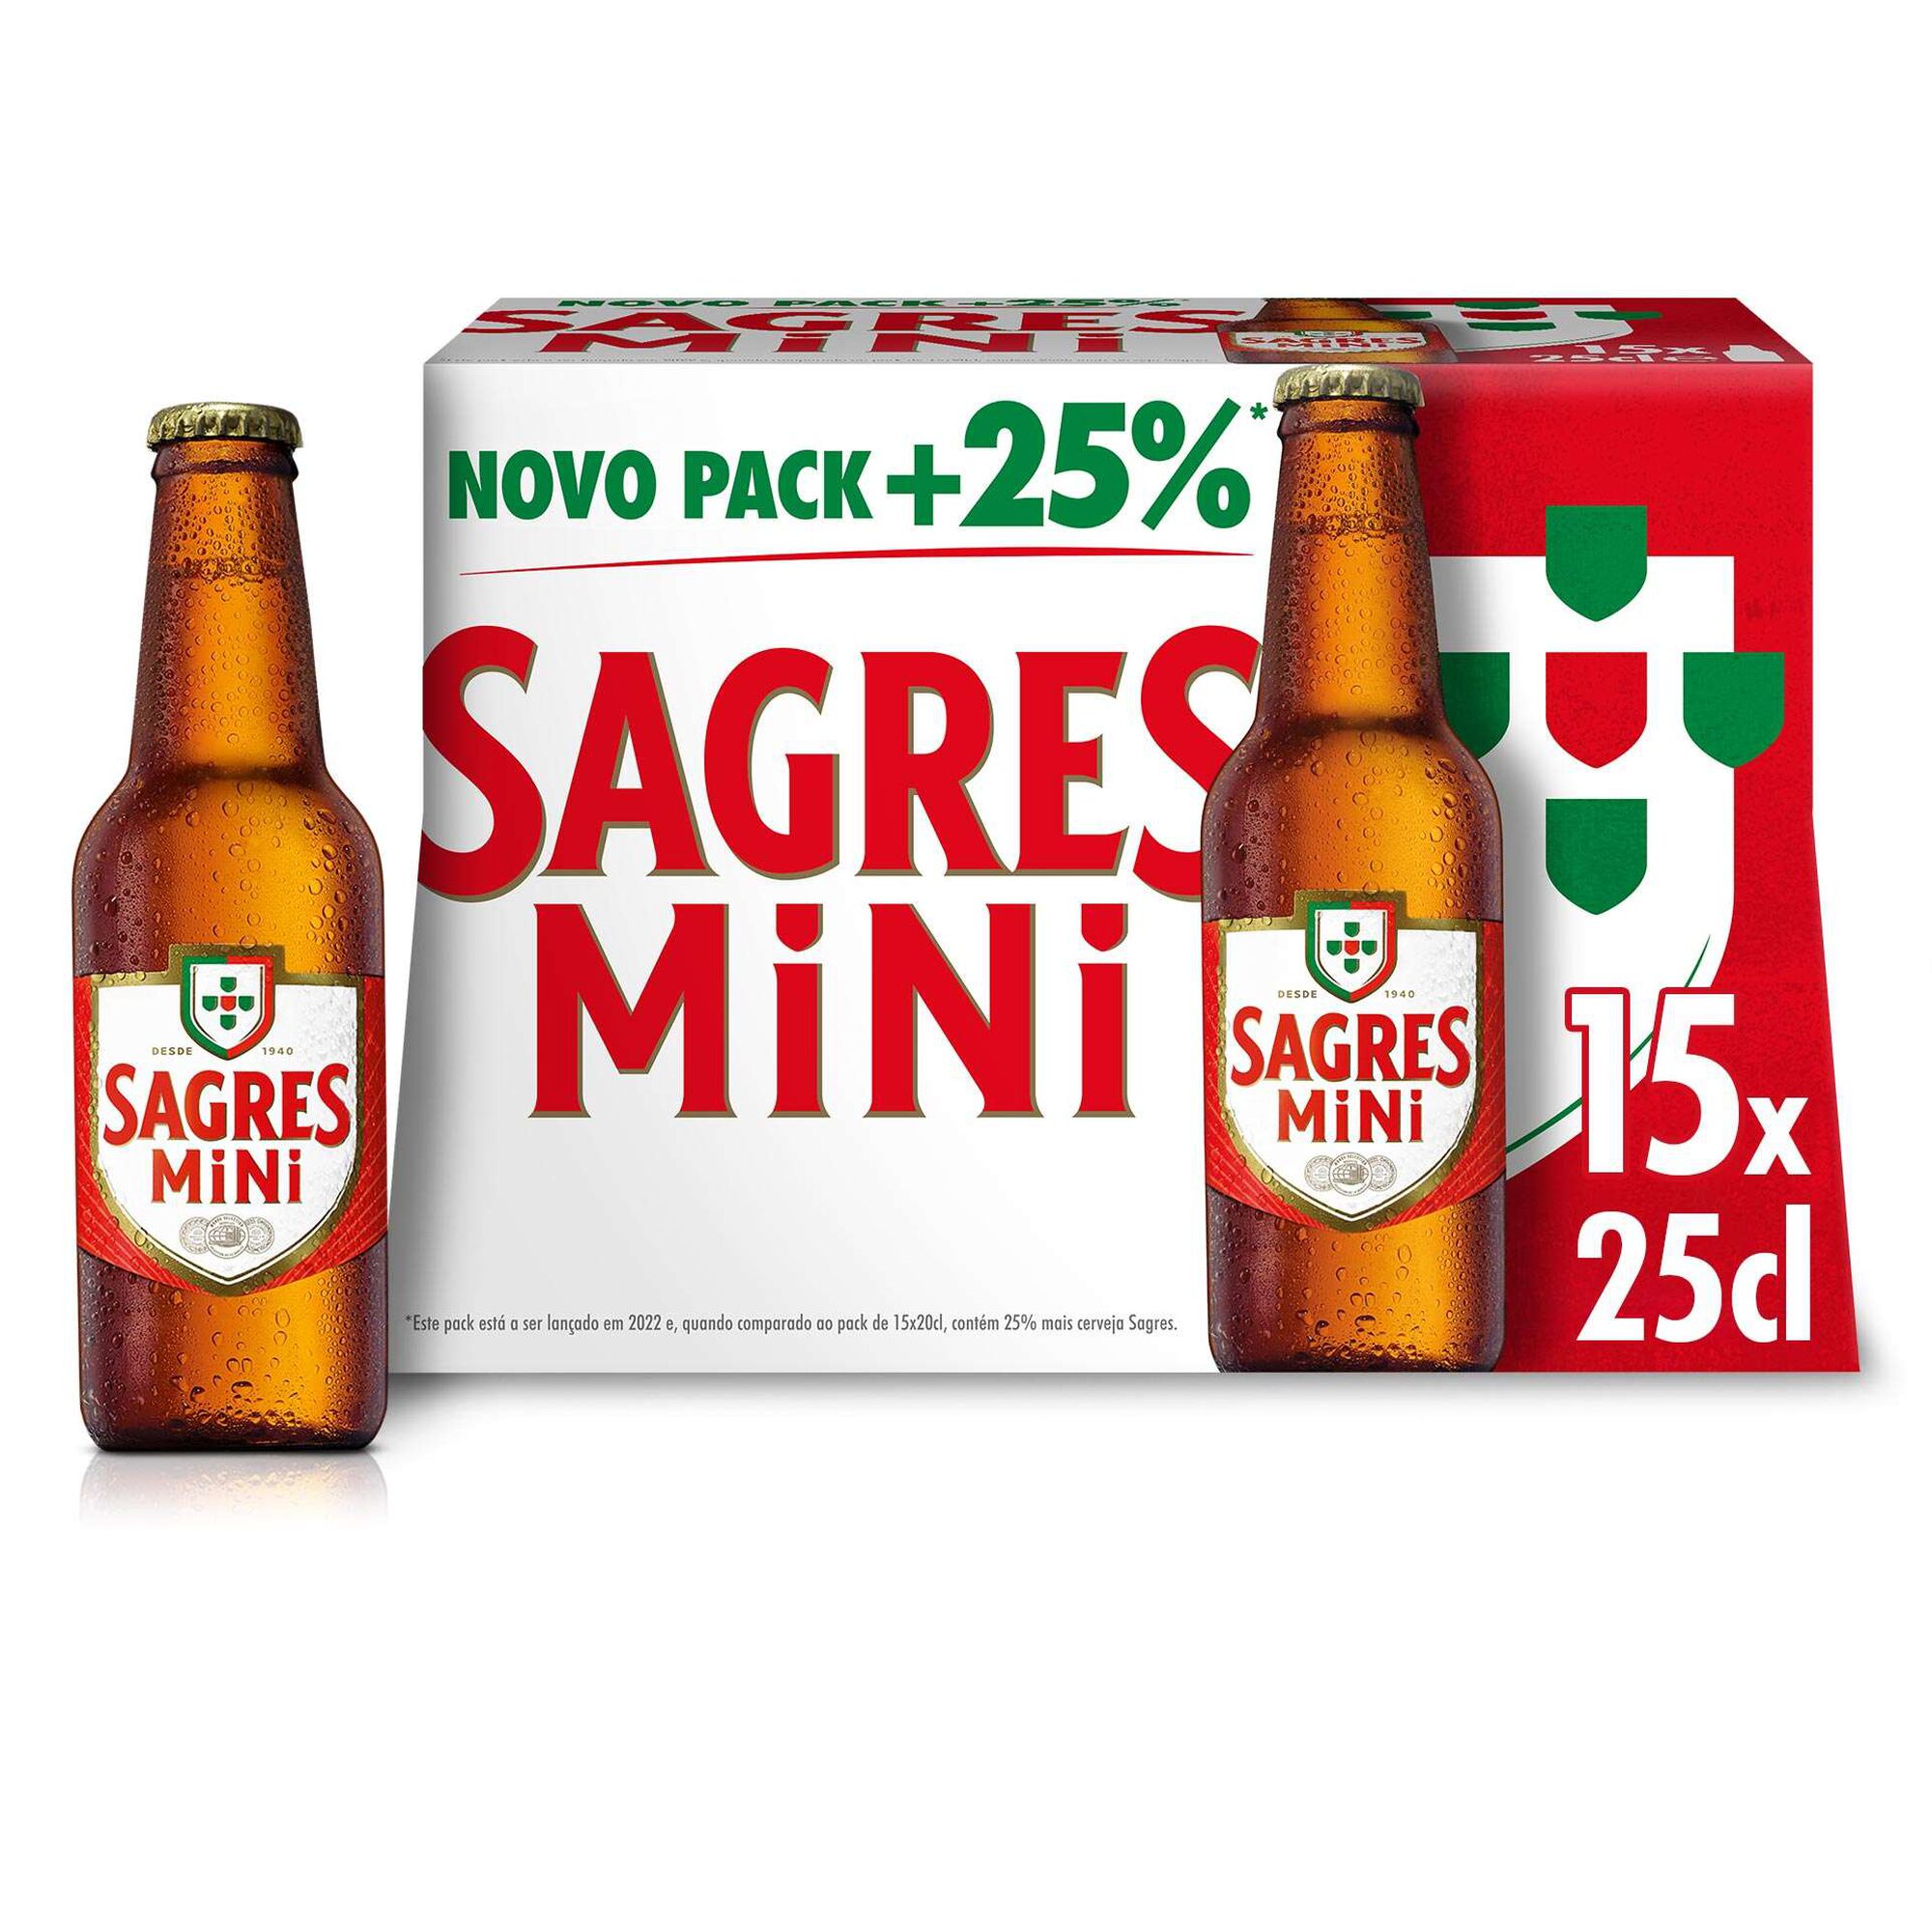 Cerveja Desperados 33cl - Cervejas com Álcool - Cervejas & Sidras